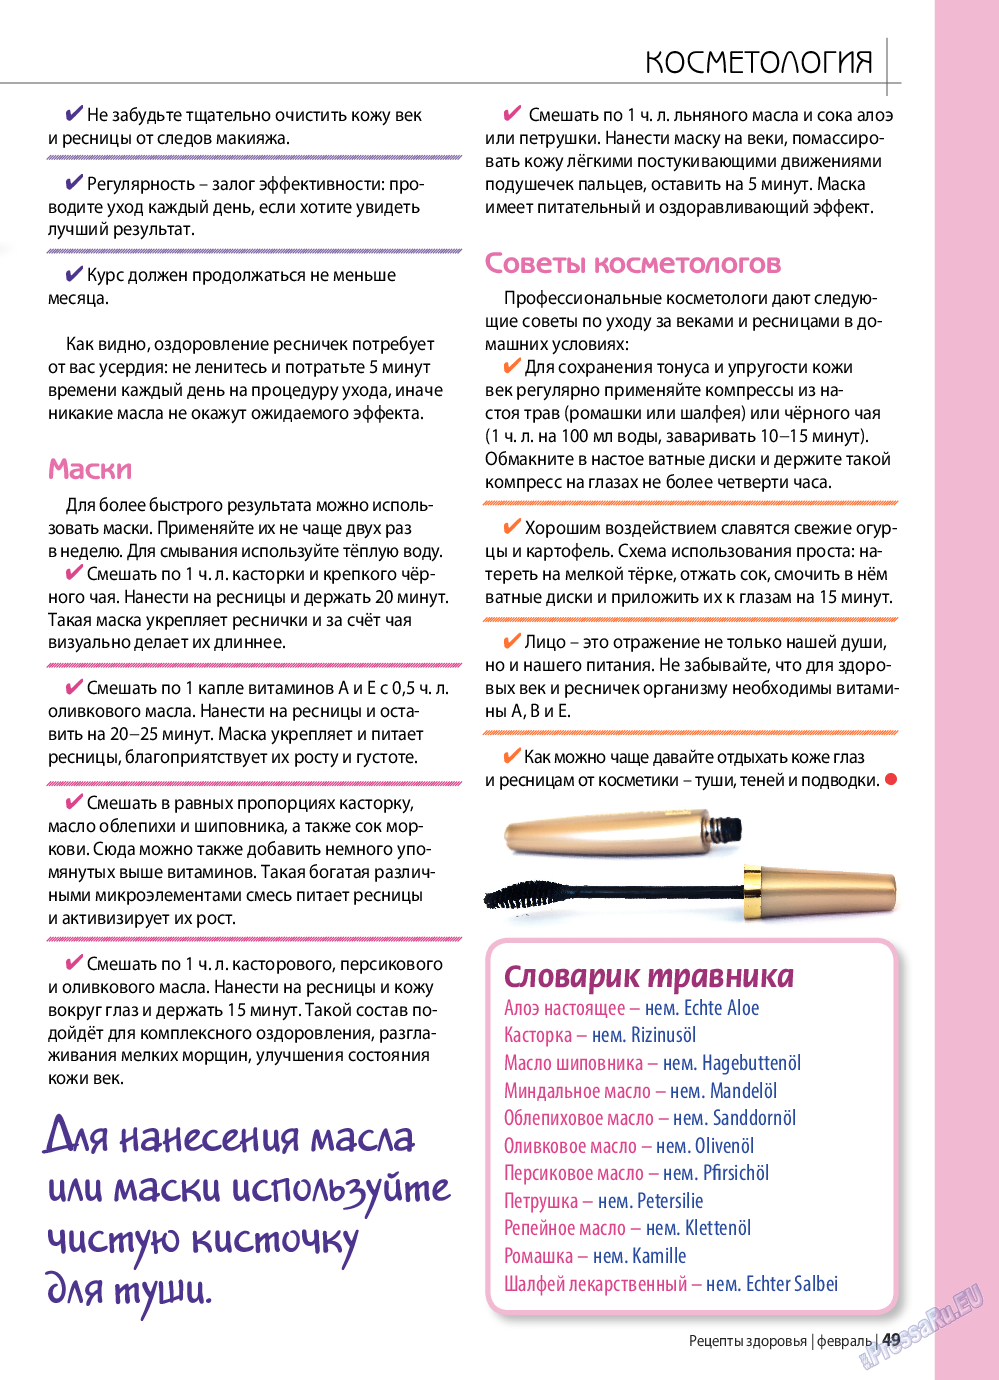 Рецепты здоровья, журнал. 2019 №117 стр.49